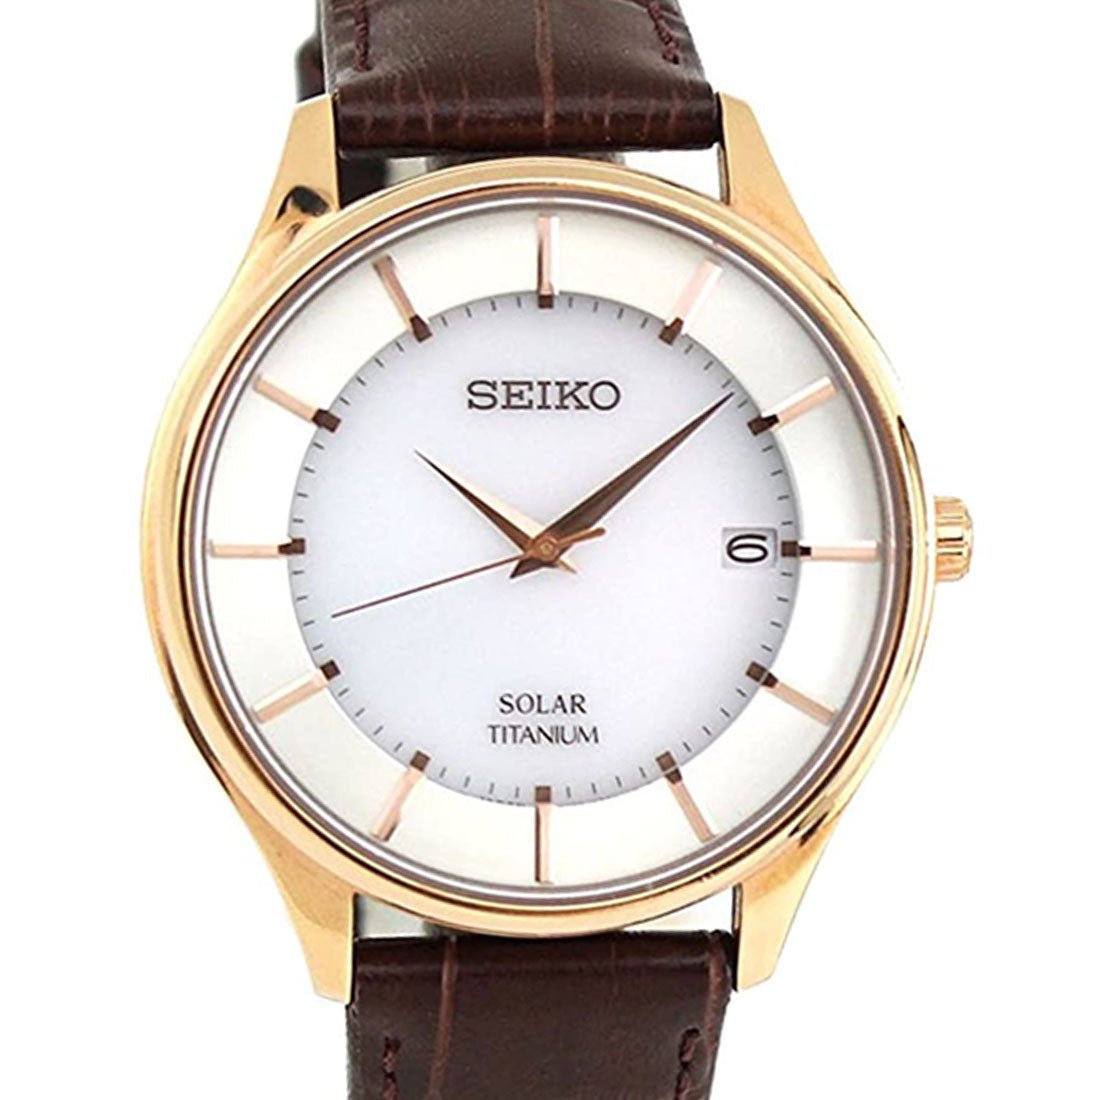 Seiko Selection Titanium JDM Watch SBPX106 -Seiko